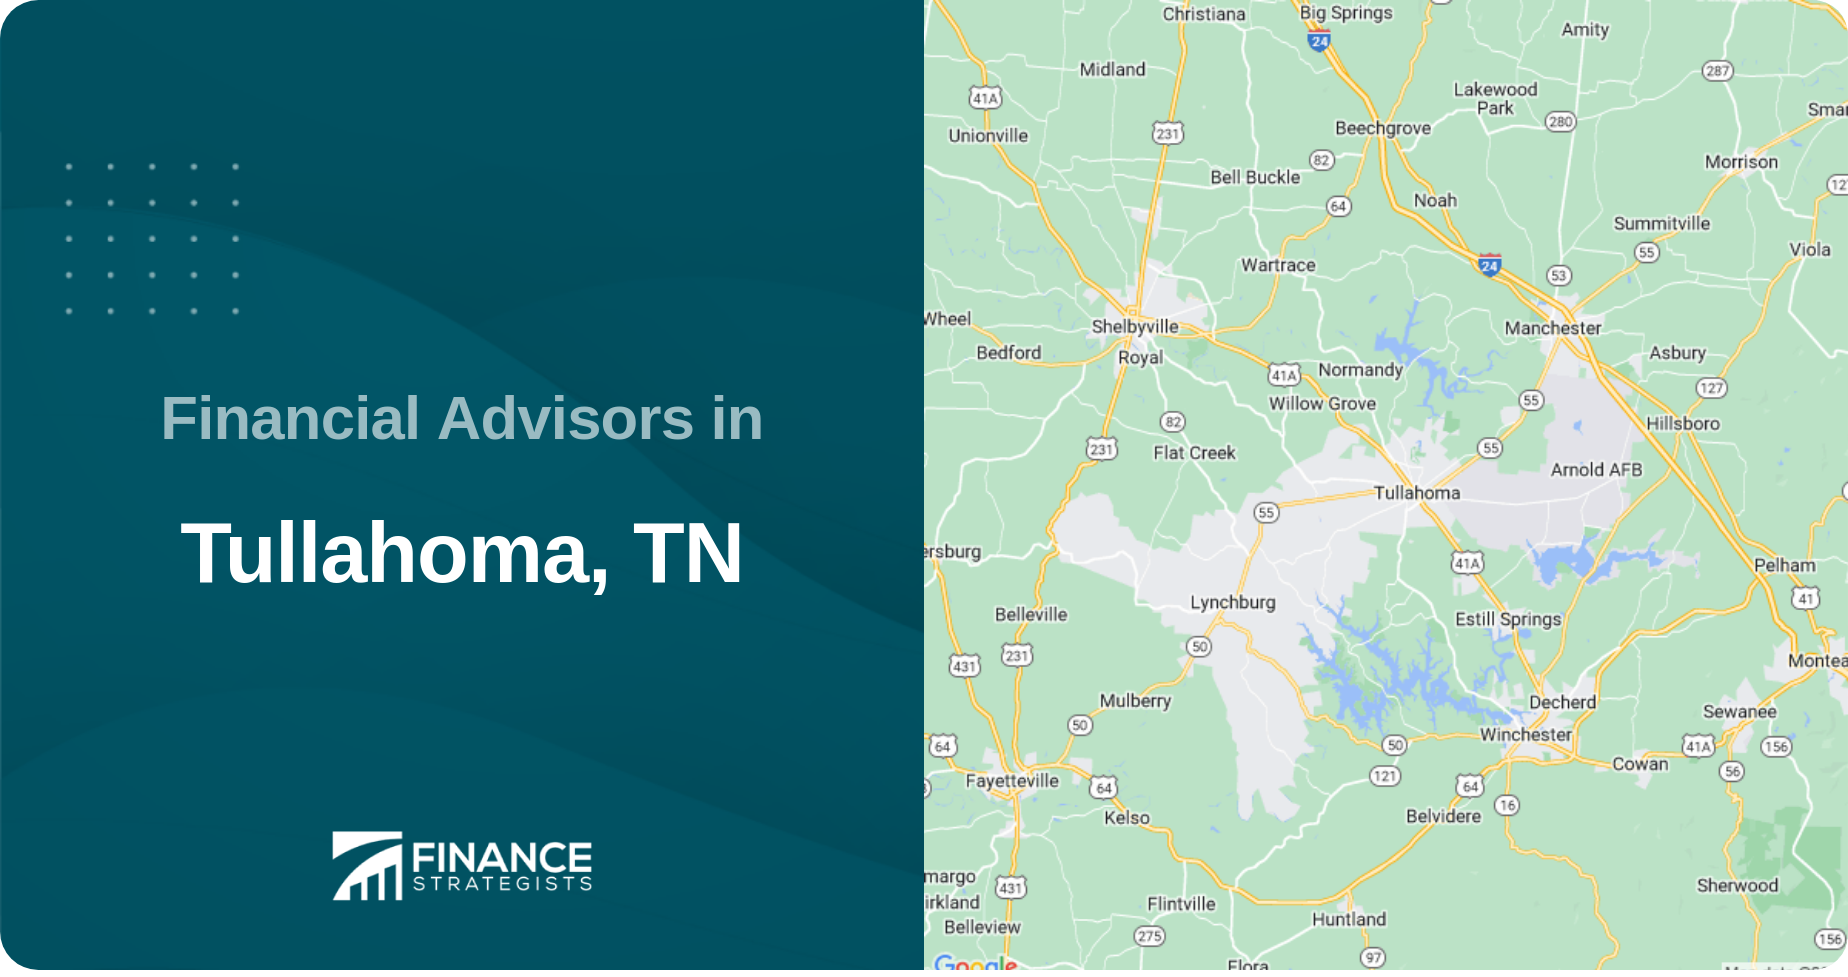 Financial Advisors in Tullahoma, TN